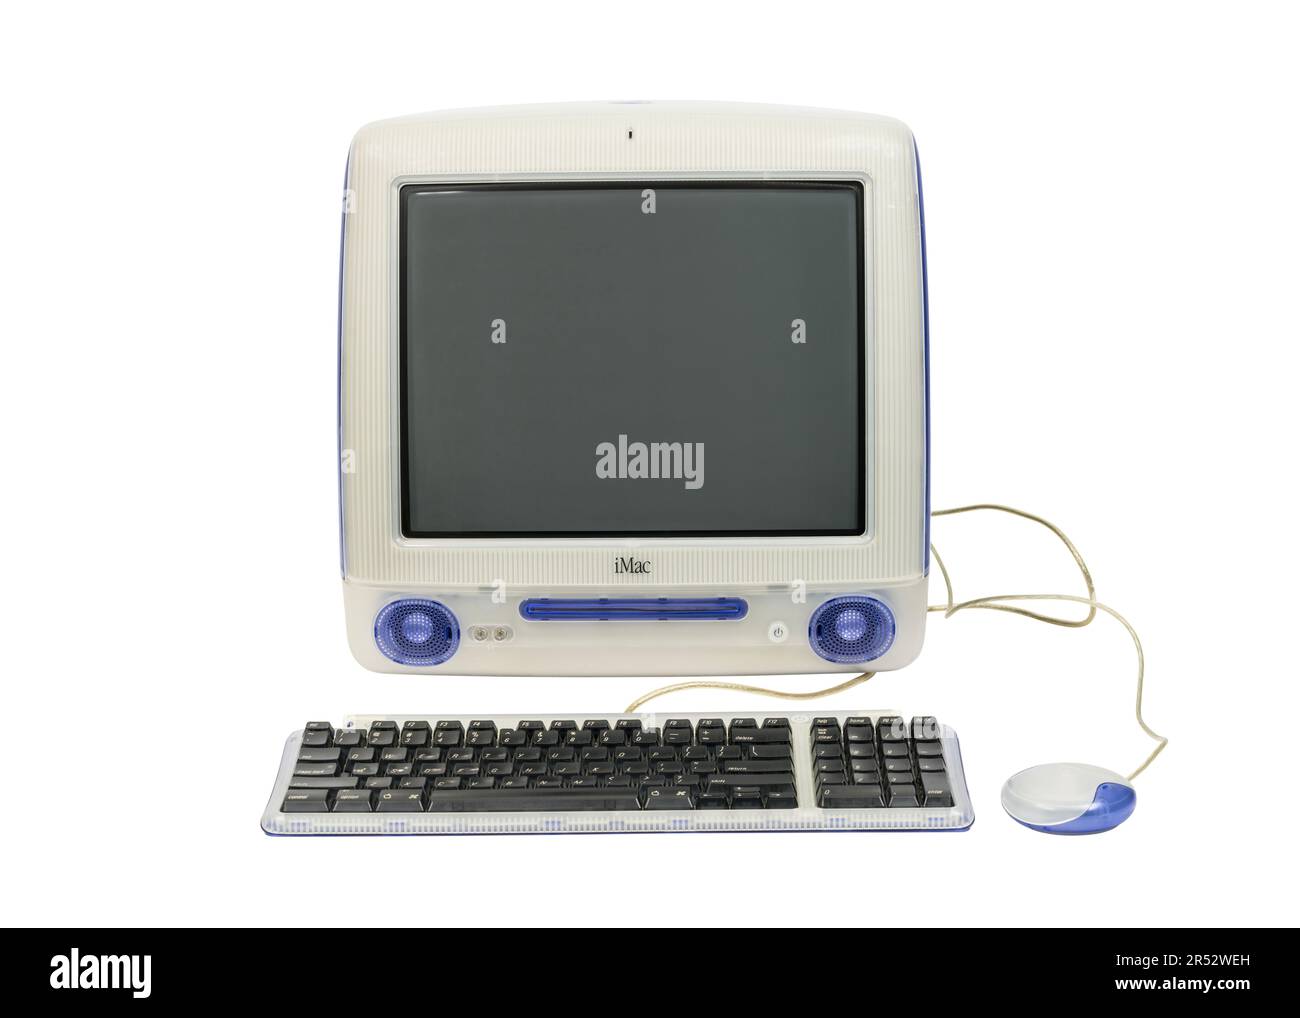 Los Angeles, California, USA - 30 maggio 2023: Fotografia editoriale illustrativa di un computer desktop Apple iMac G3 d'epoca. Il computer è stato realizzato nel 1999. Foto Stock